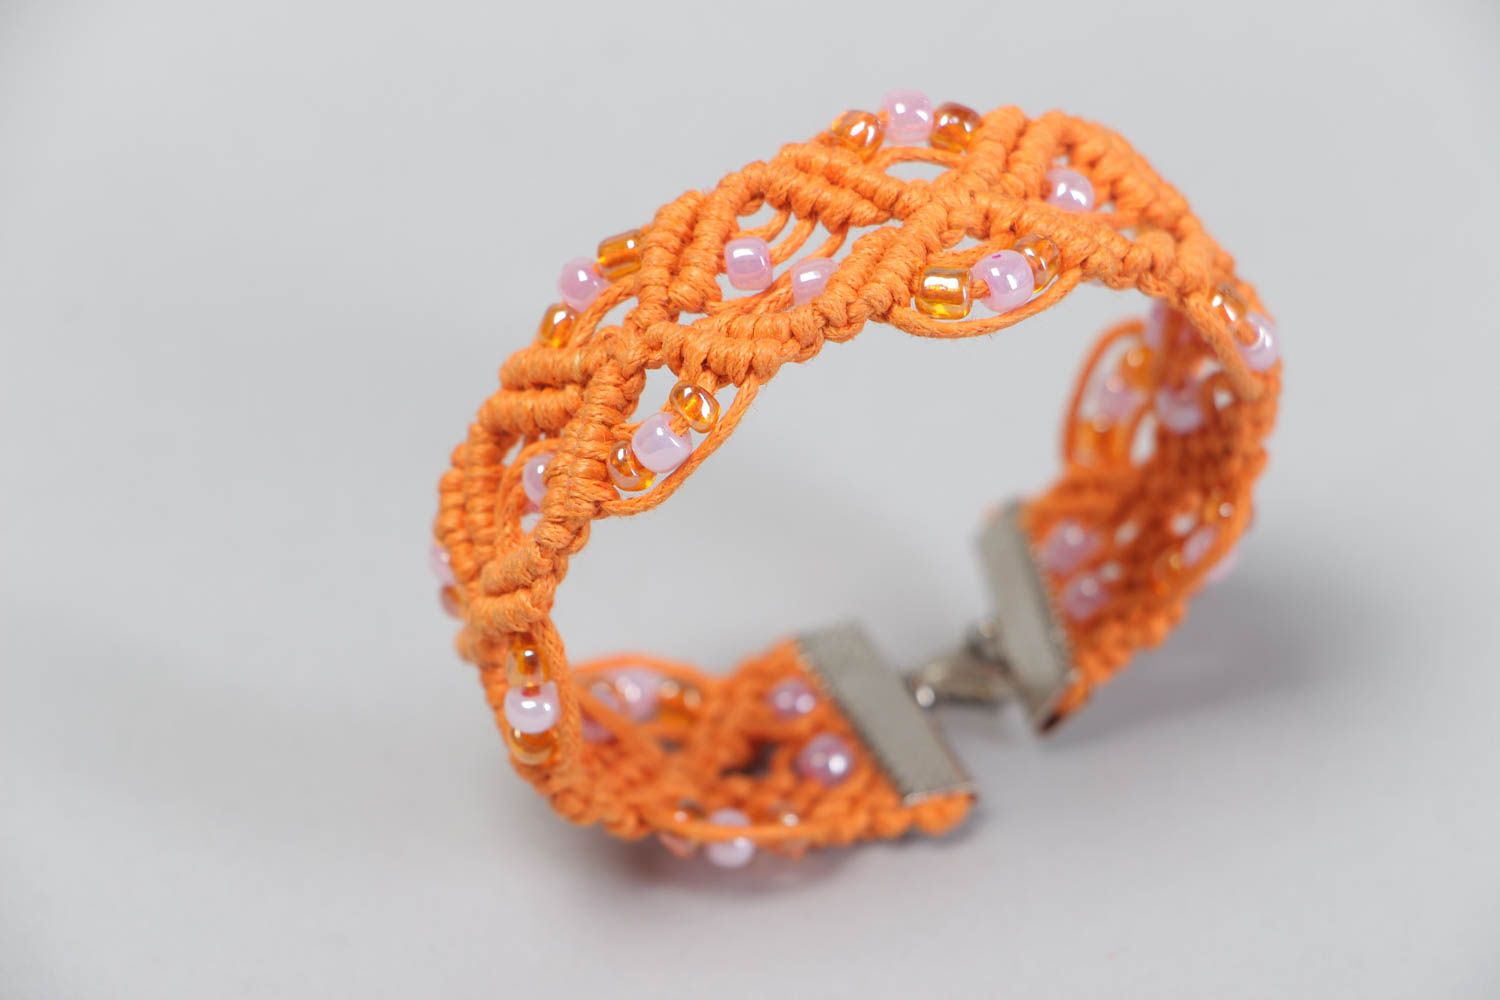 Текстильный браслет ажурный из ниток и бисера оранжевый красивый ручная работа фото 4